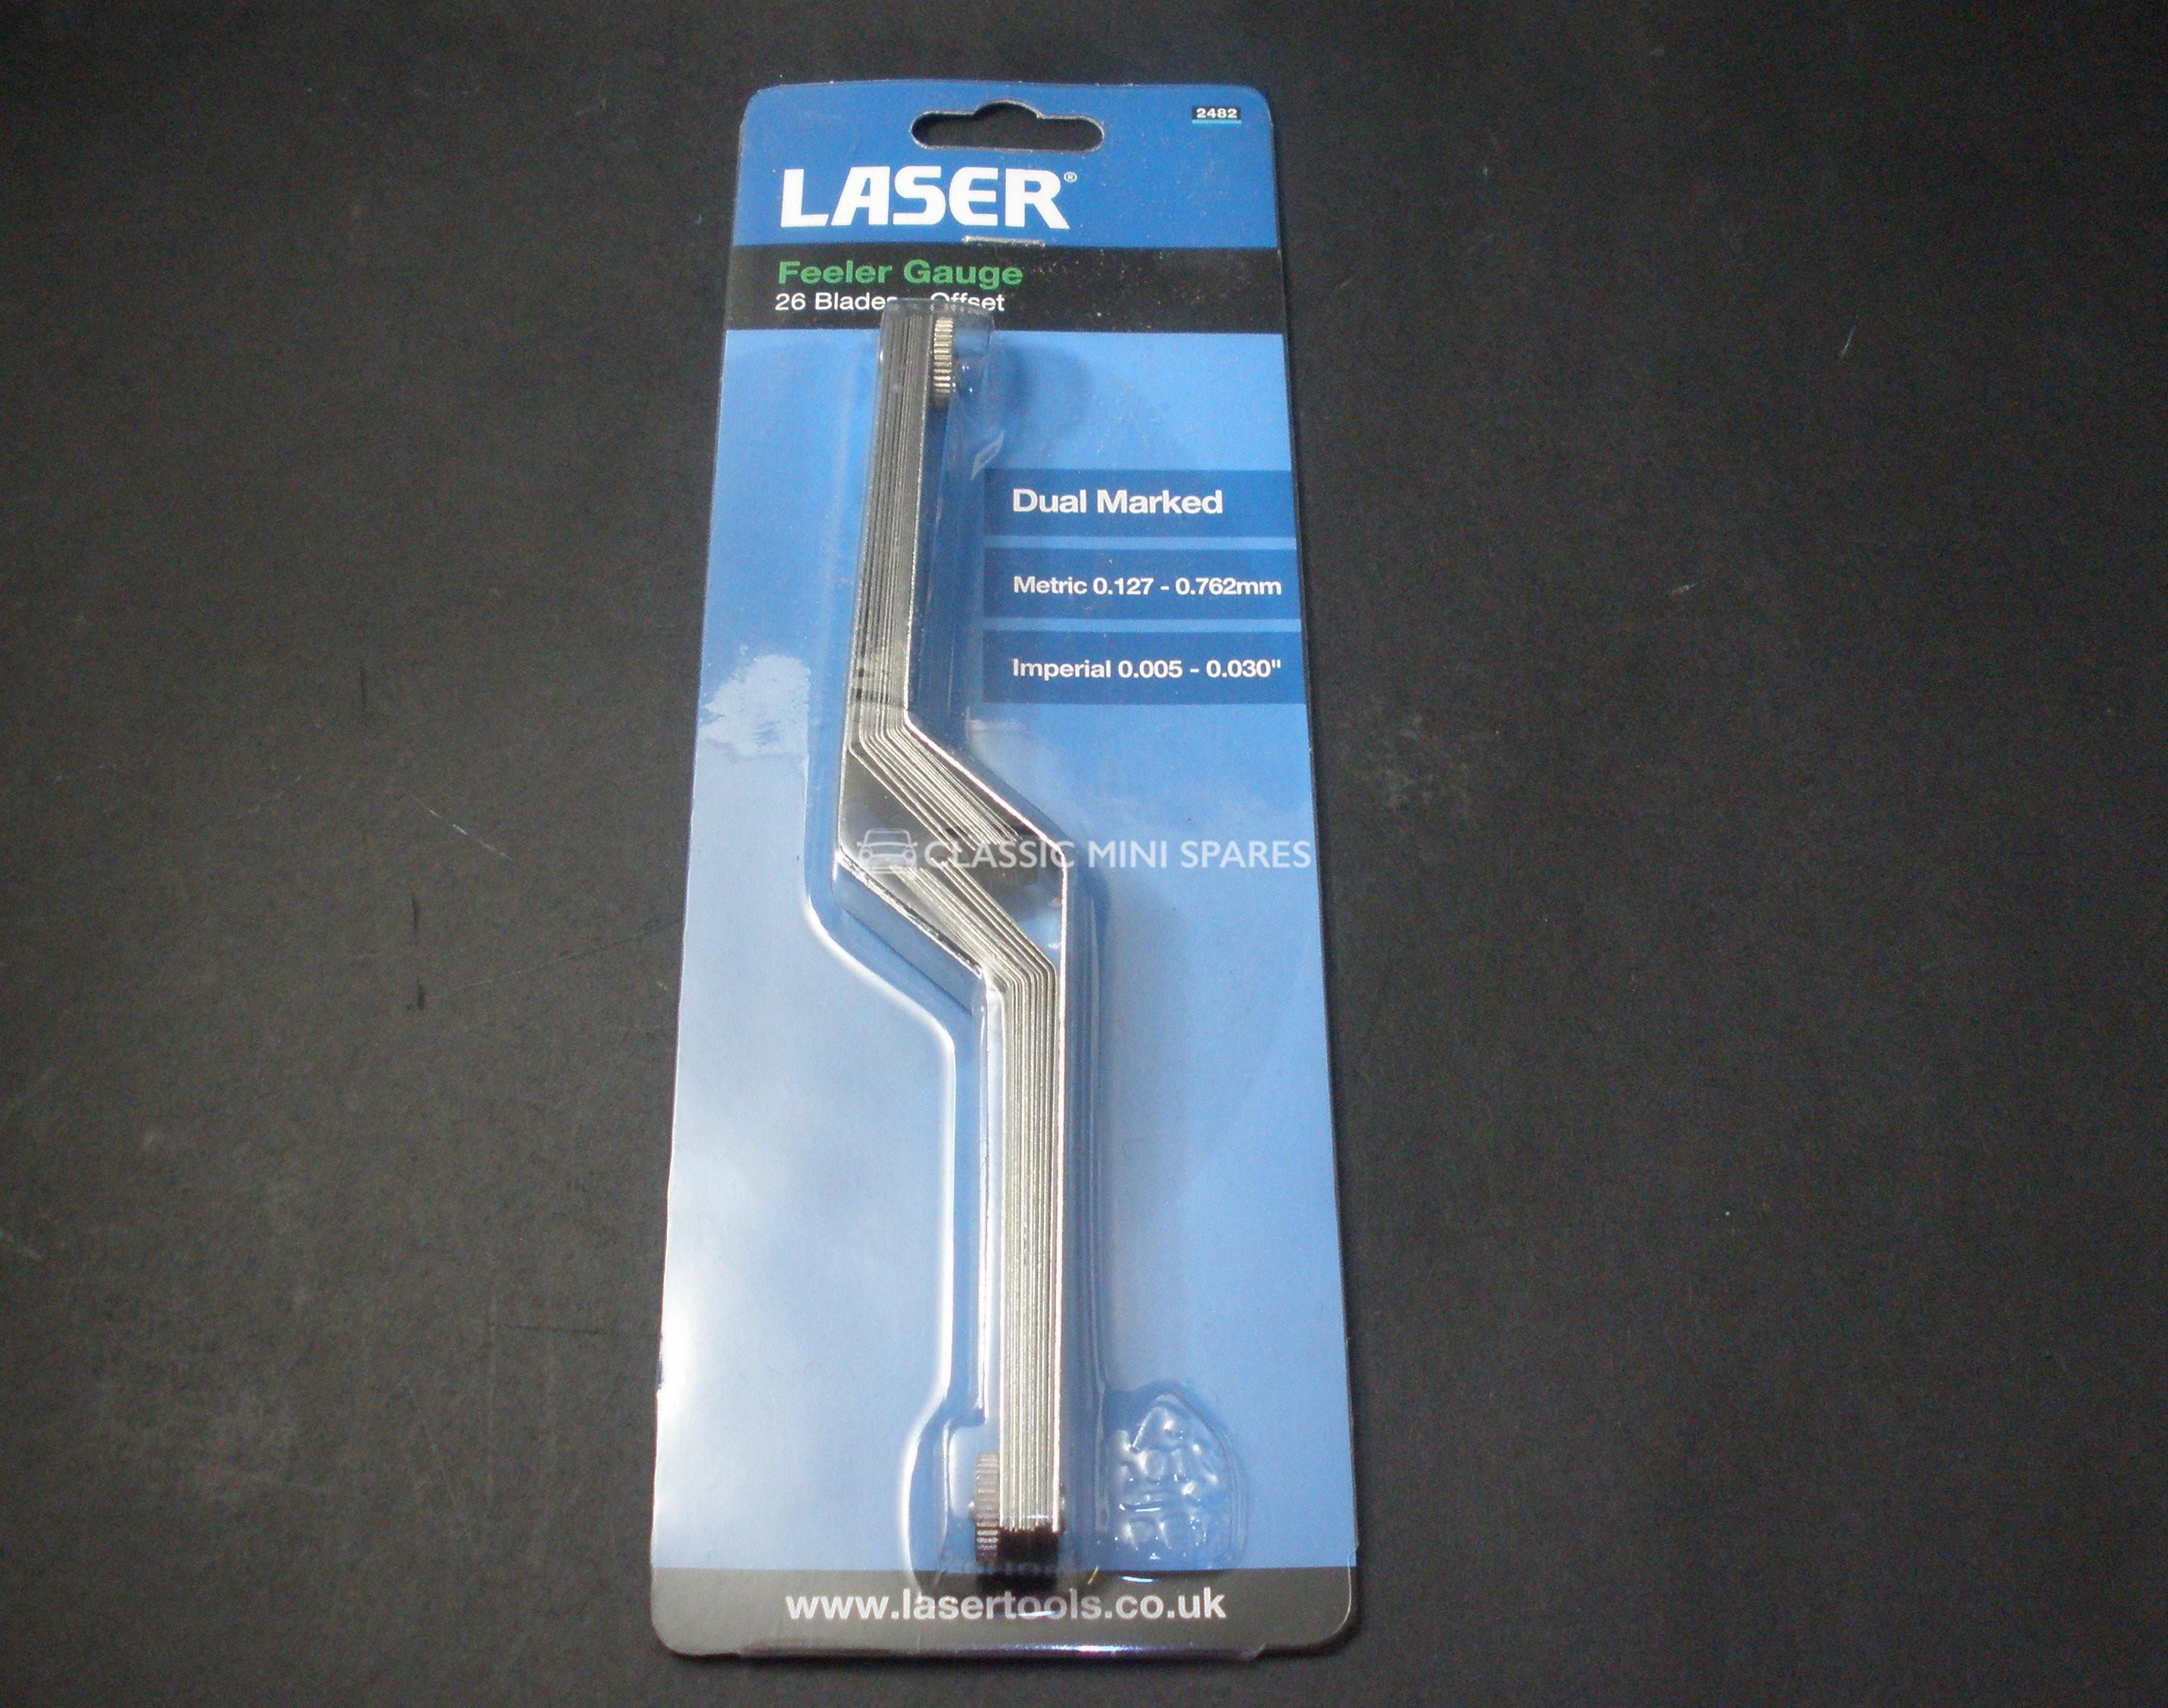 Laser 2482 Feeler Gauge Imperial/Metric 26 Blades Offset